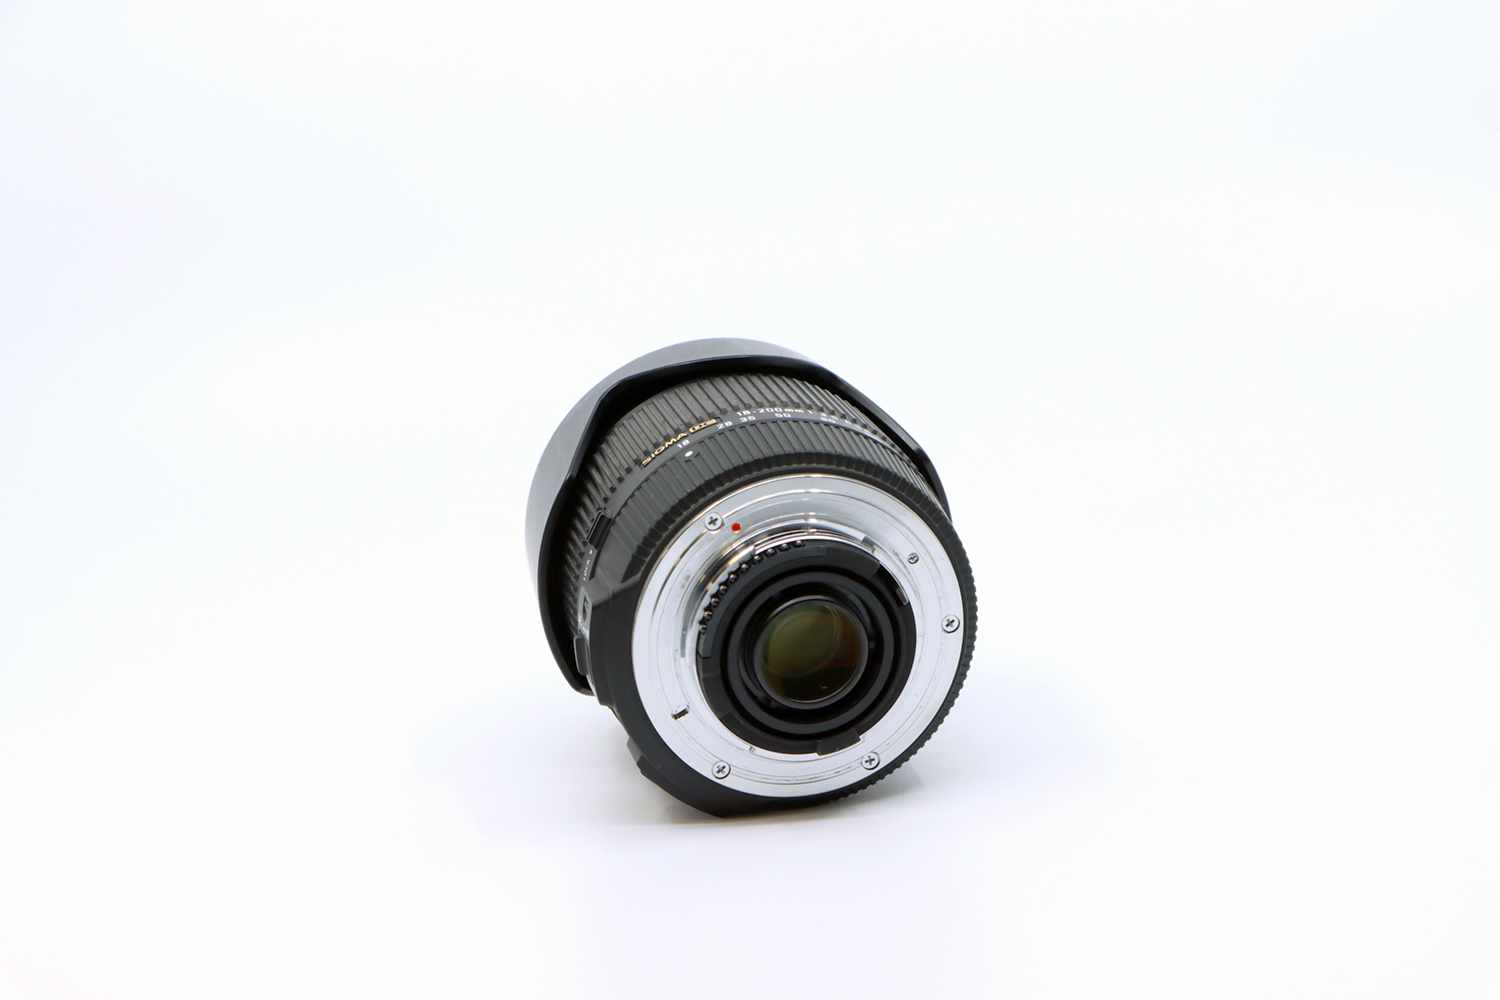 Nikon D300 + Sigma 18-200mm | IMG_6163.JPG